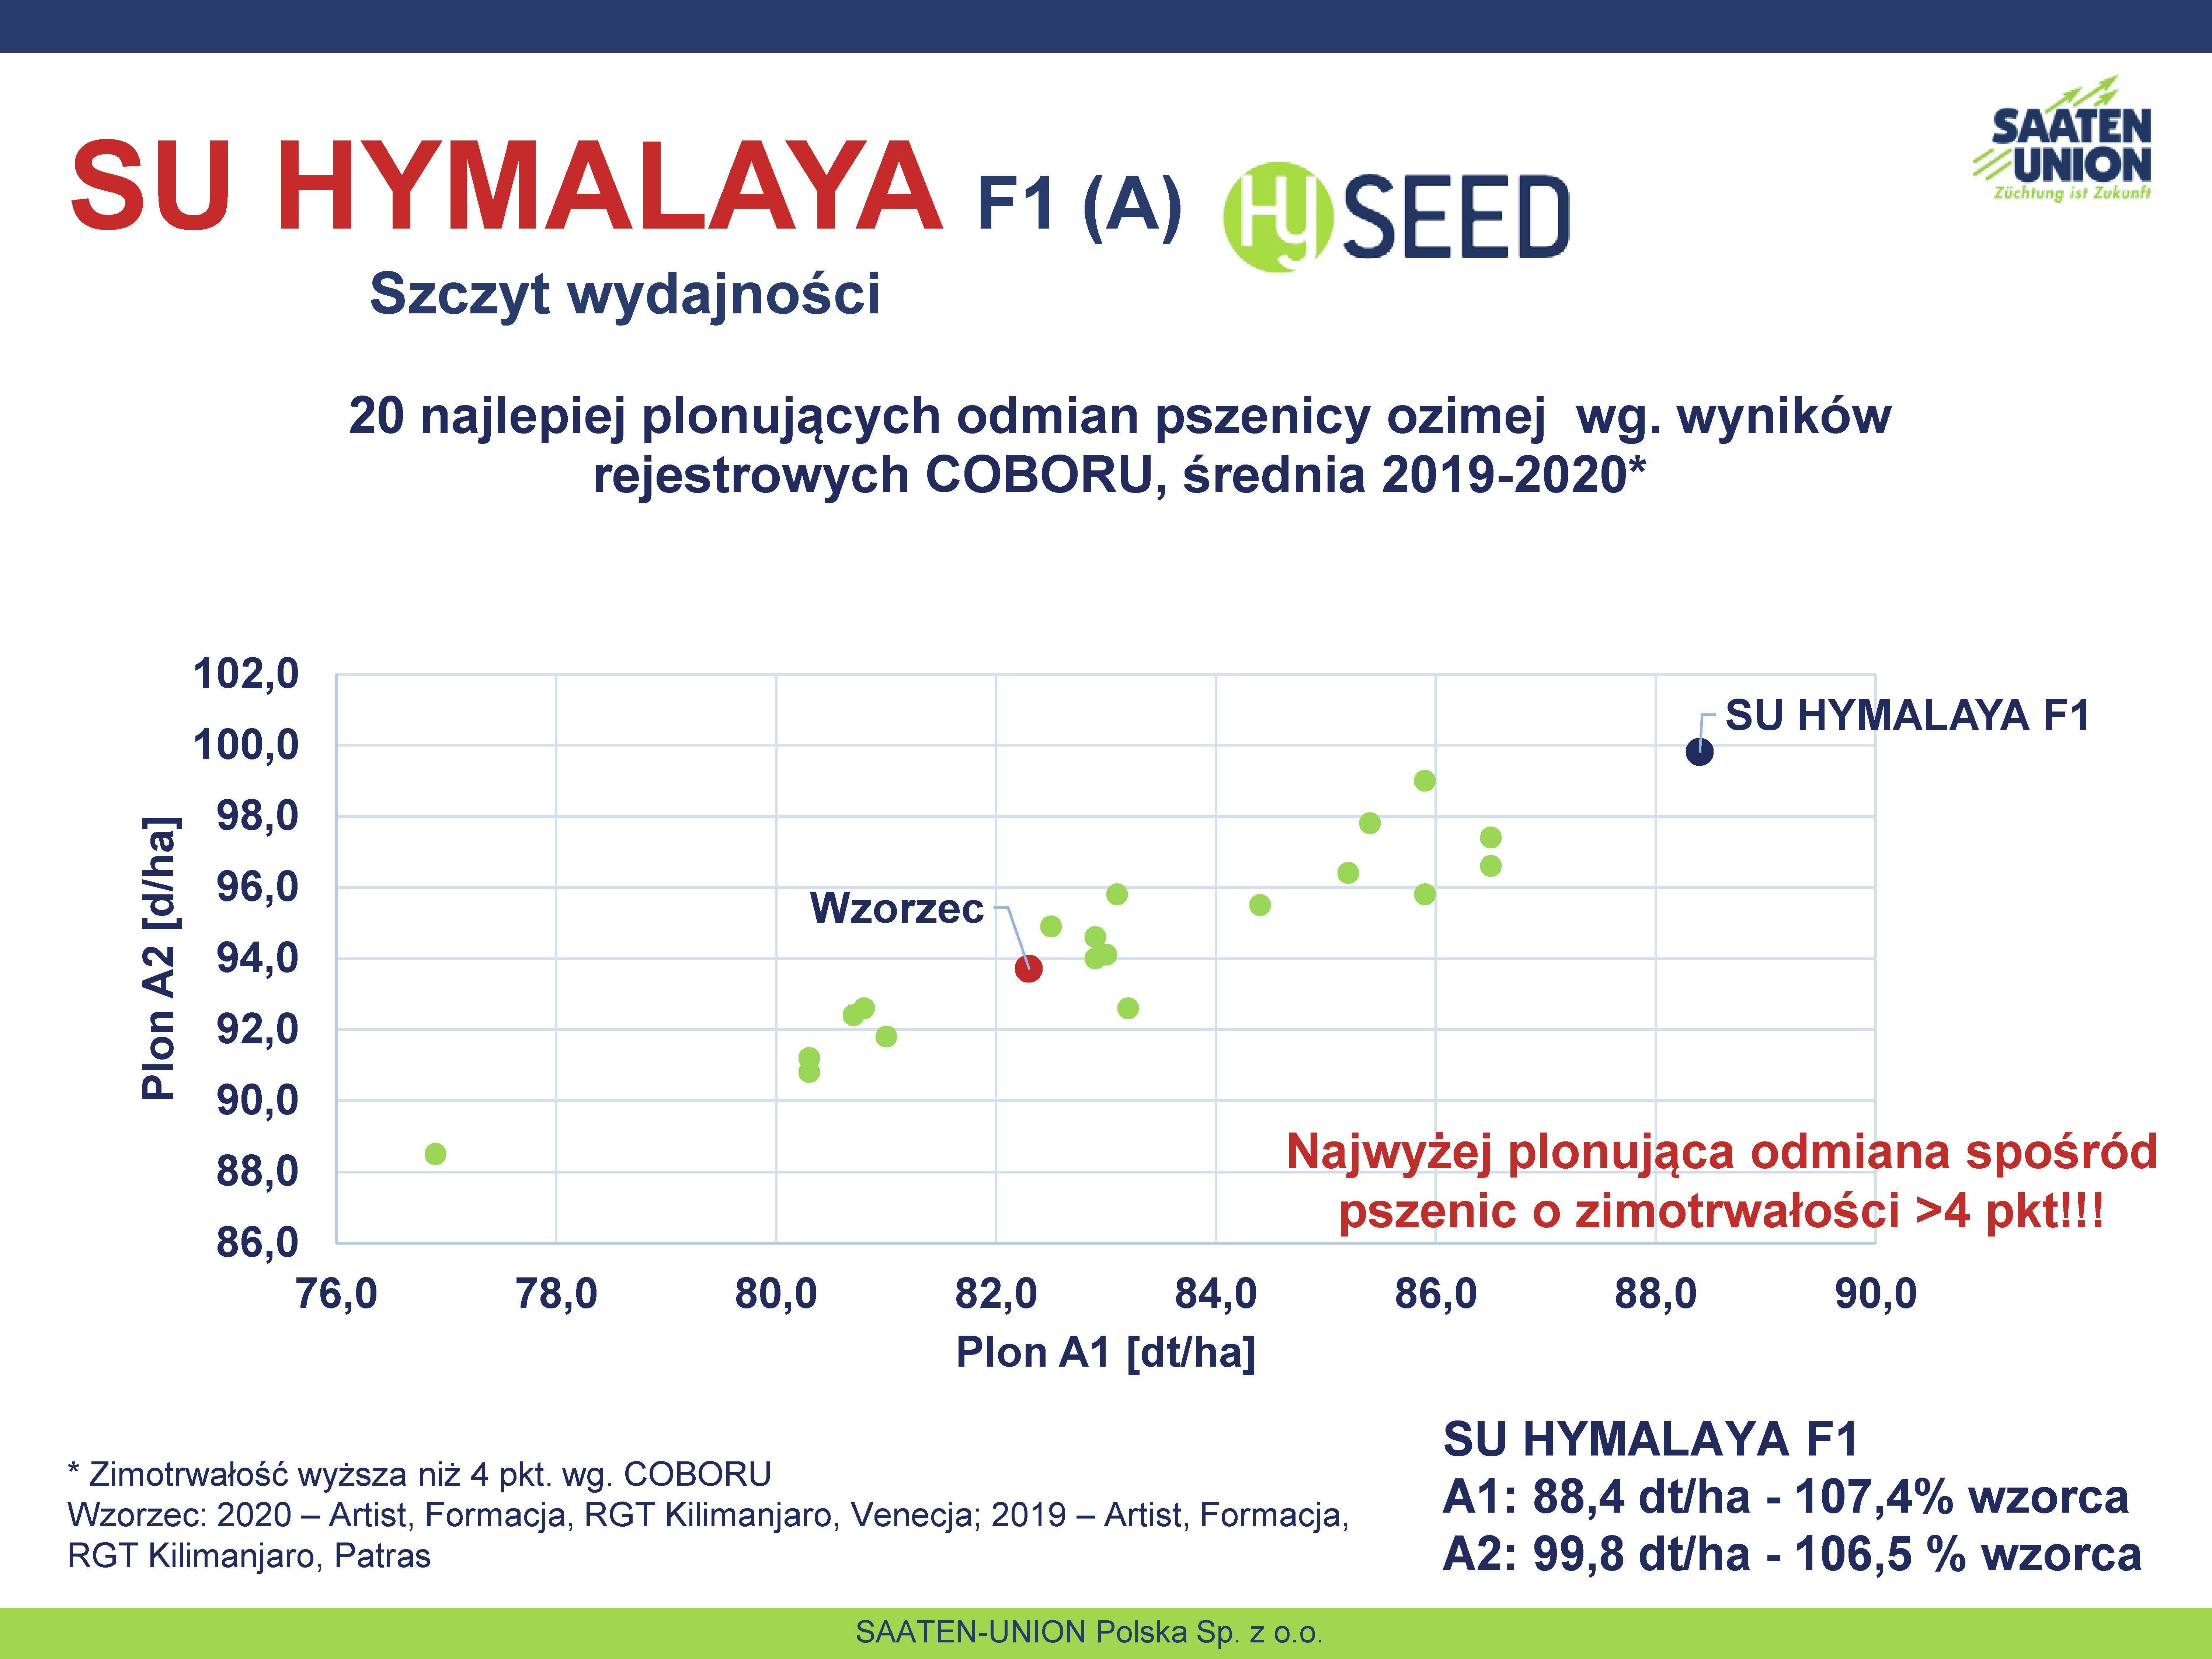 20 najlepiej plonujących odmian pszenicy ozimej  wg. wyników rejestrowych COBORU, średnia 2019-2020